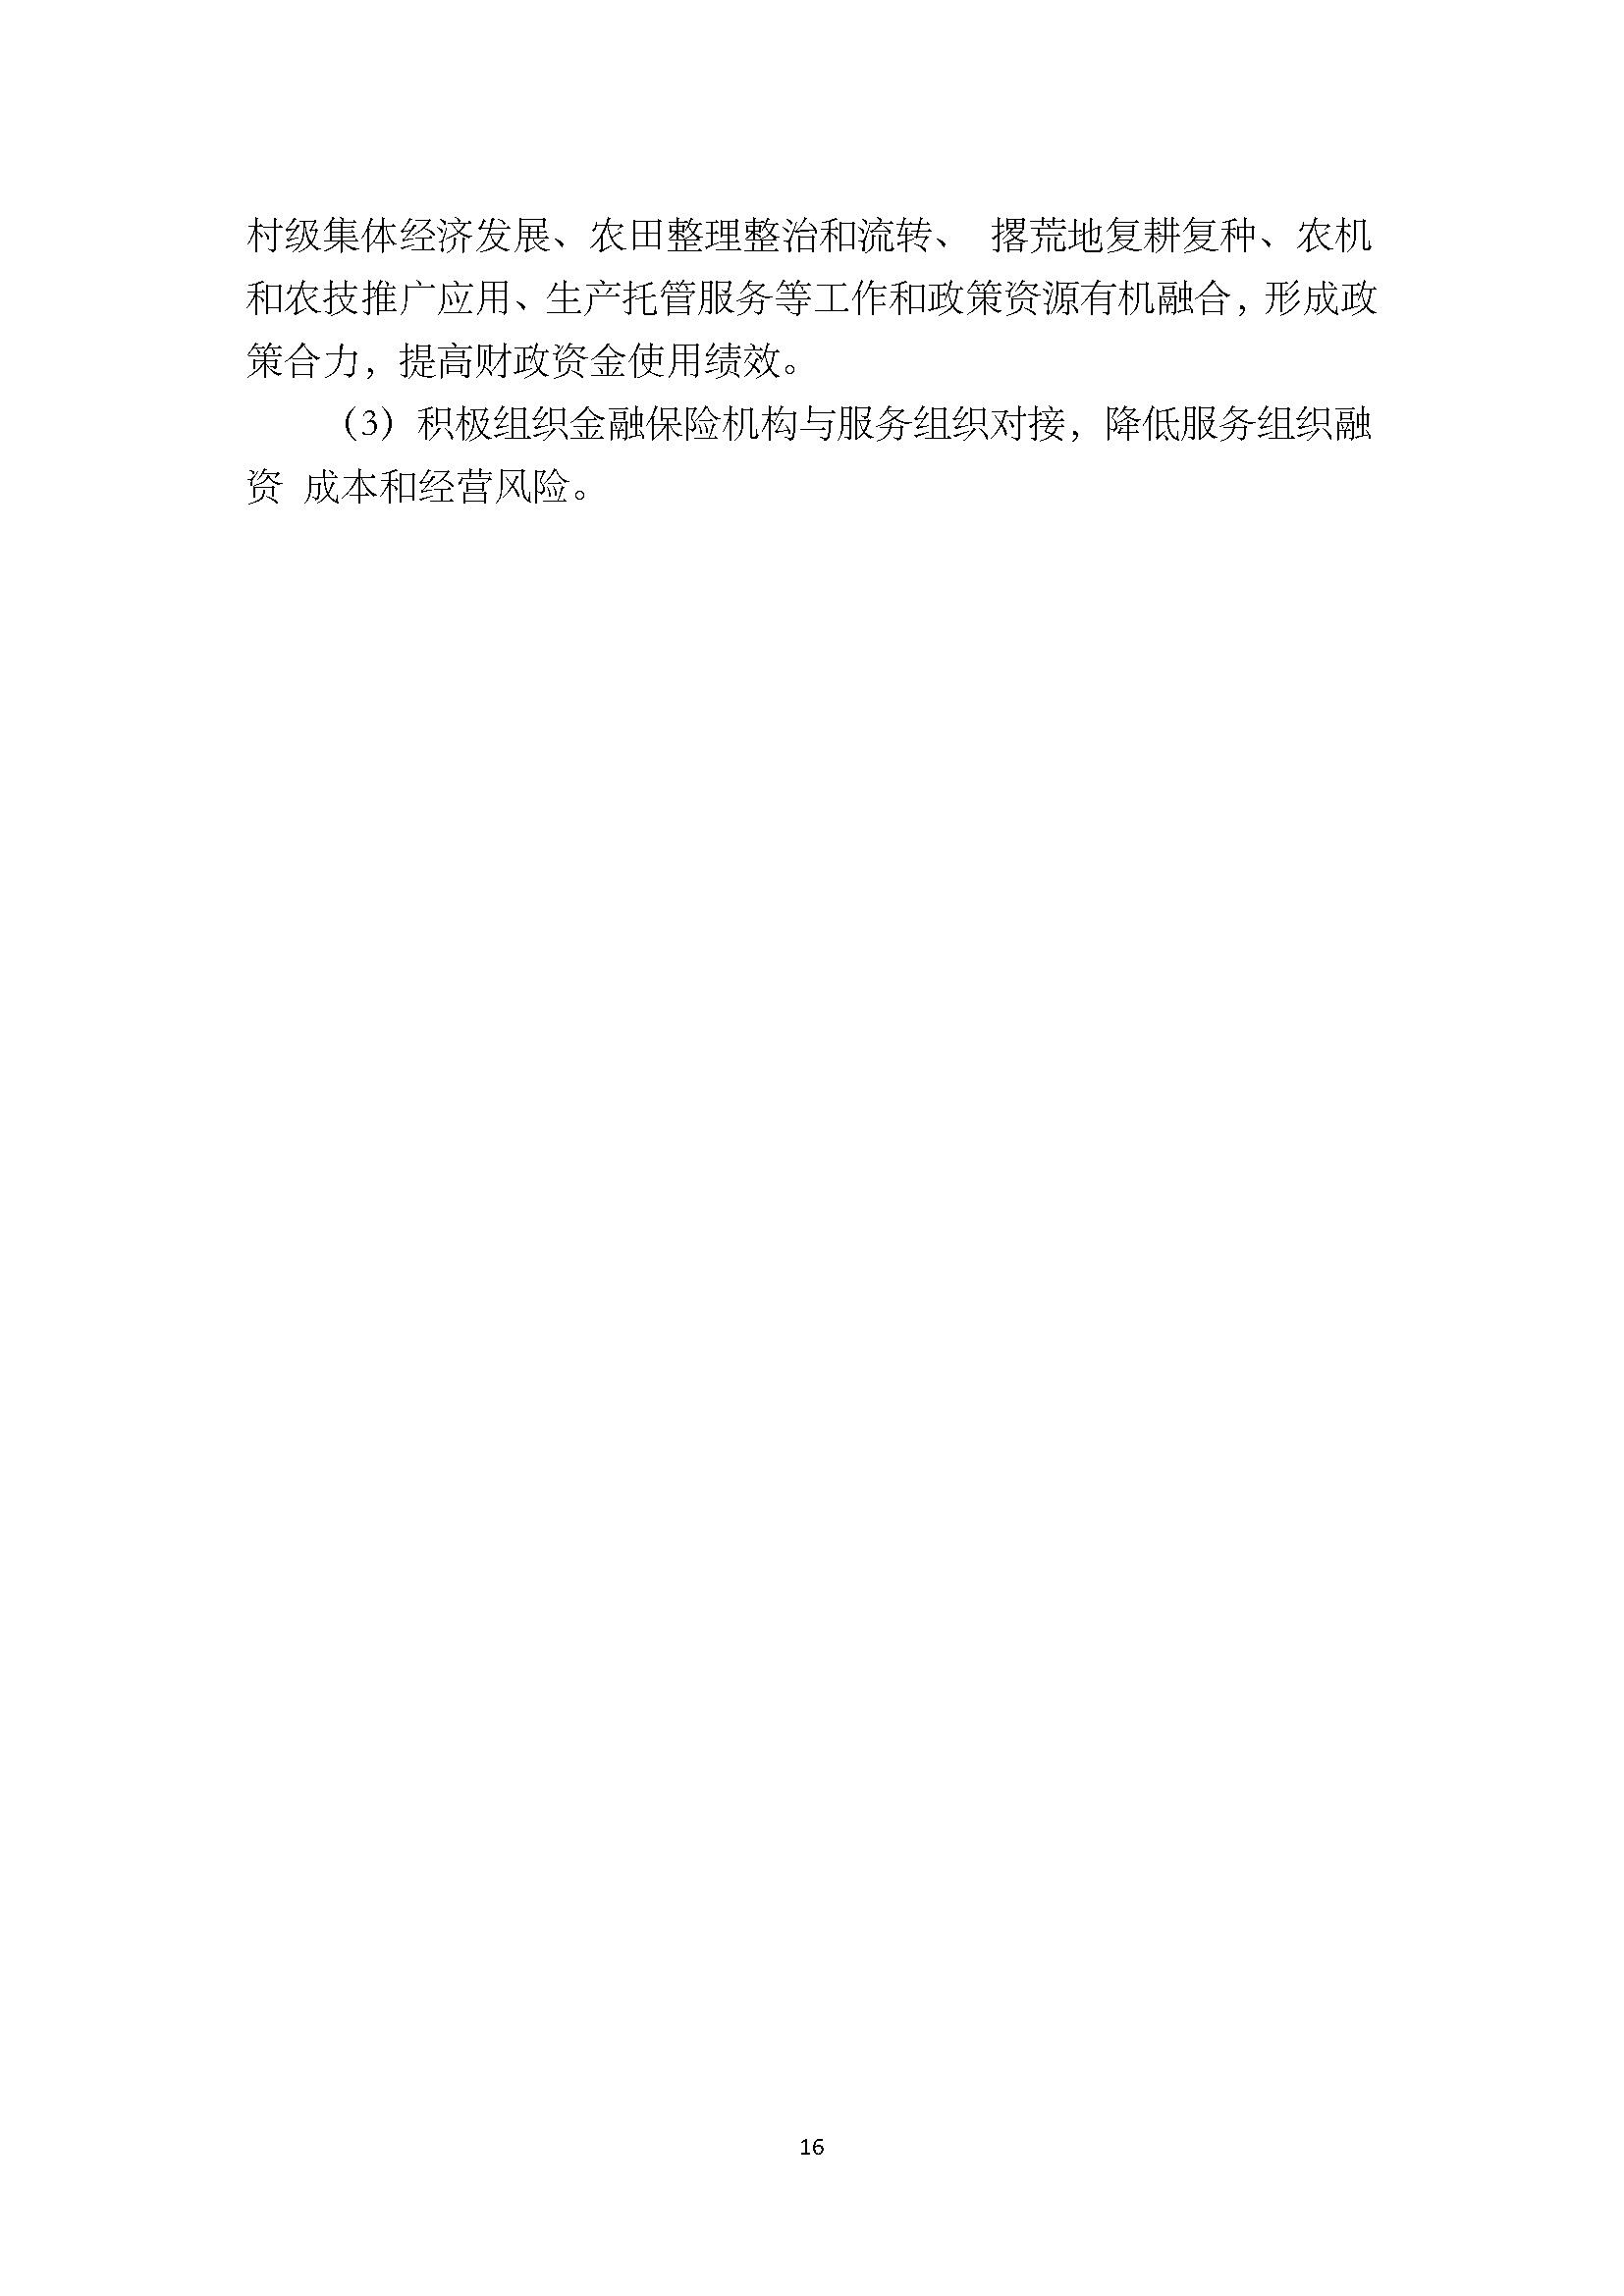 1.广东省农业生产托管服务工作手册_页面_18.jpg